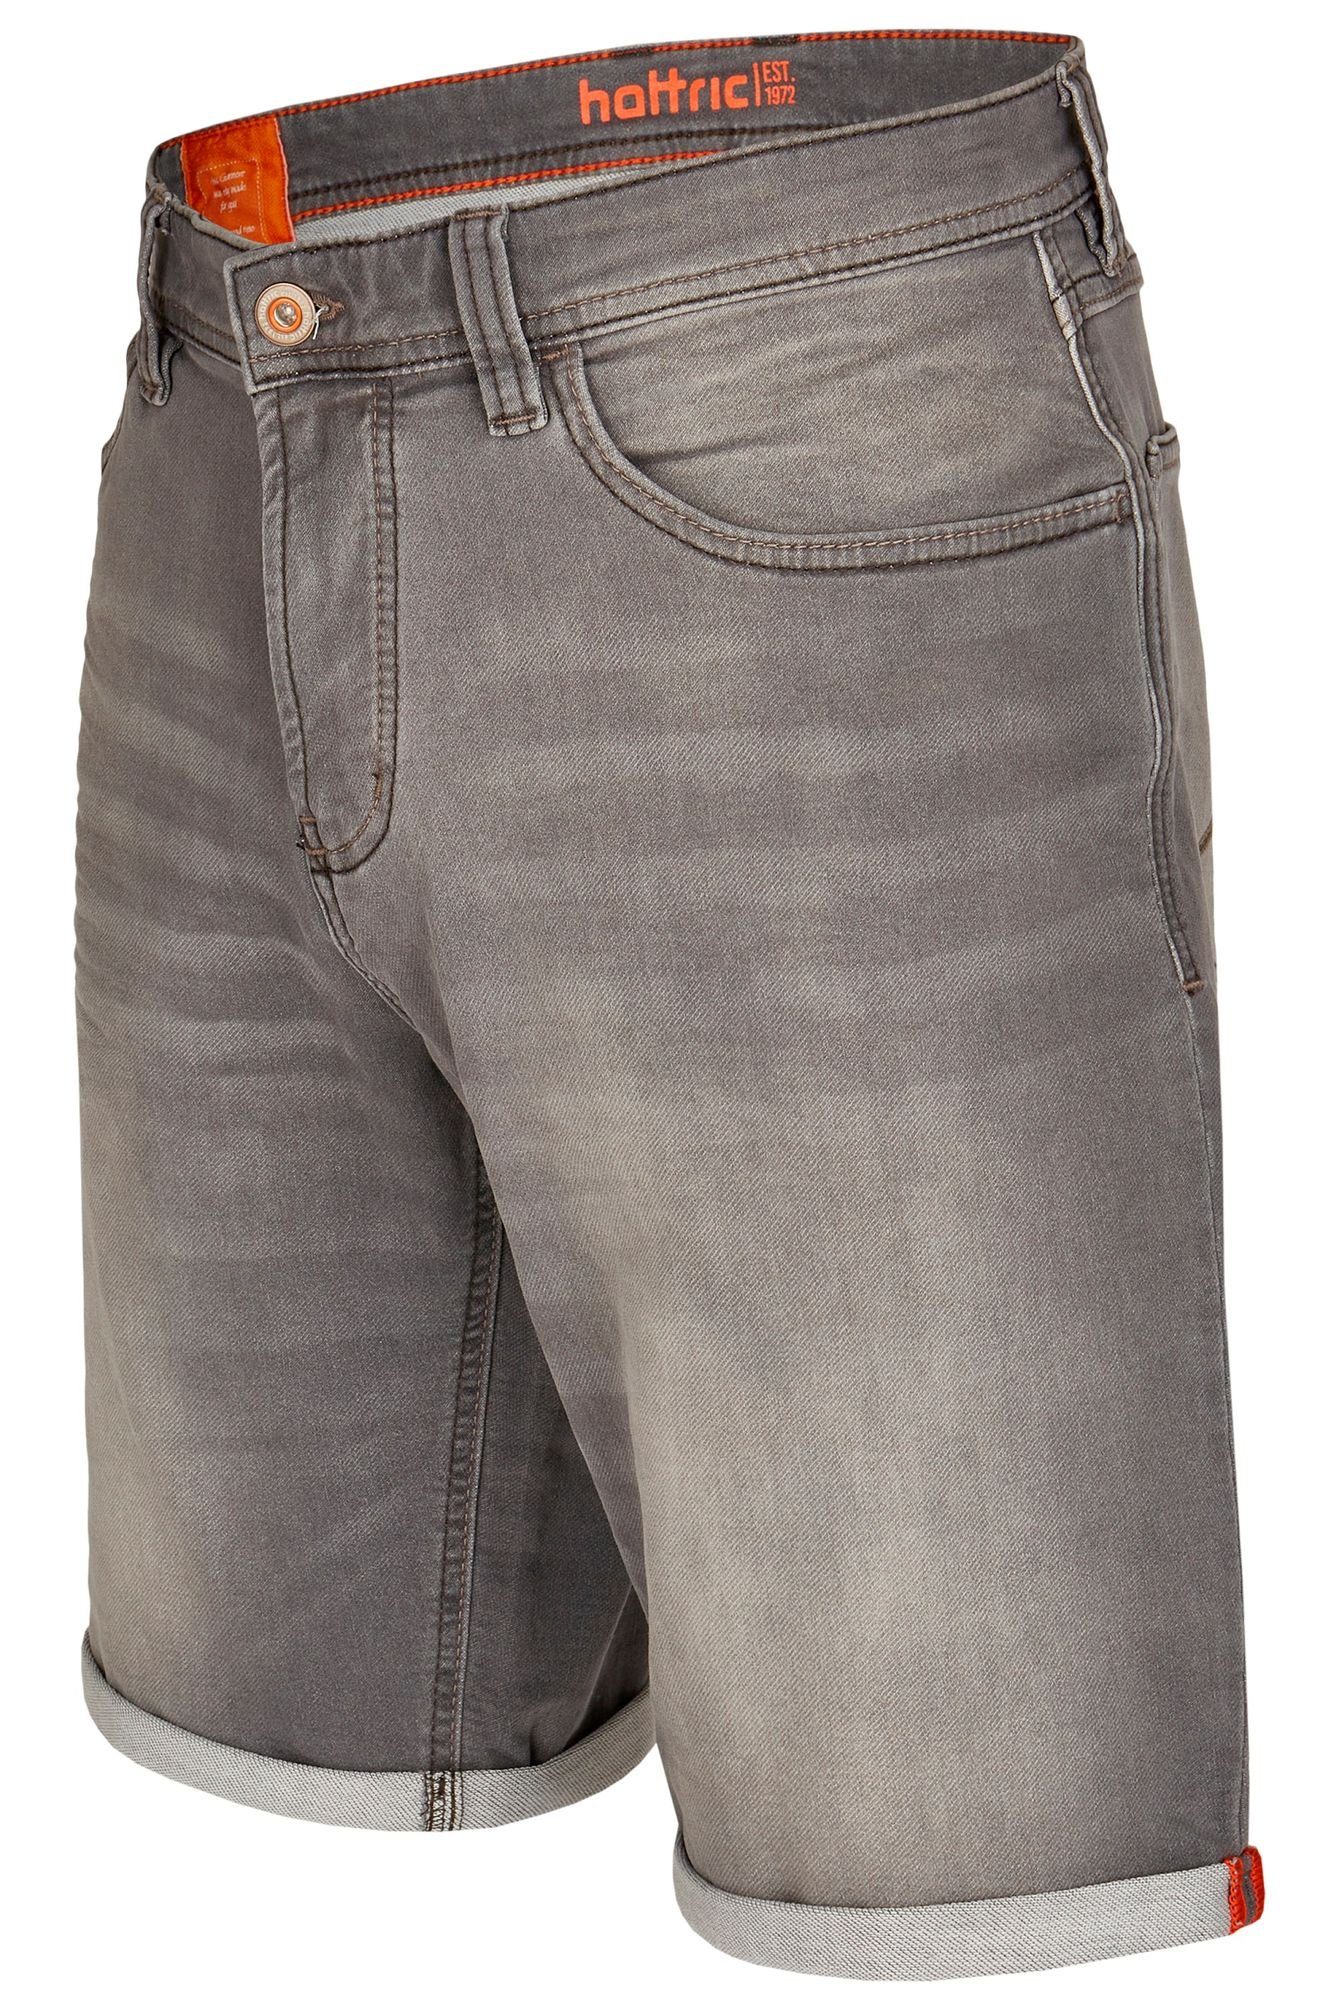 Hattric Shorts 698835-7712 grey (04)